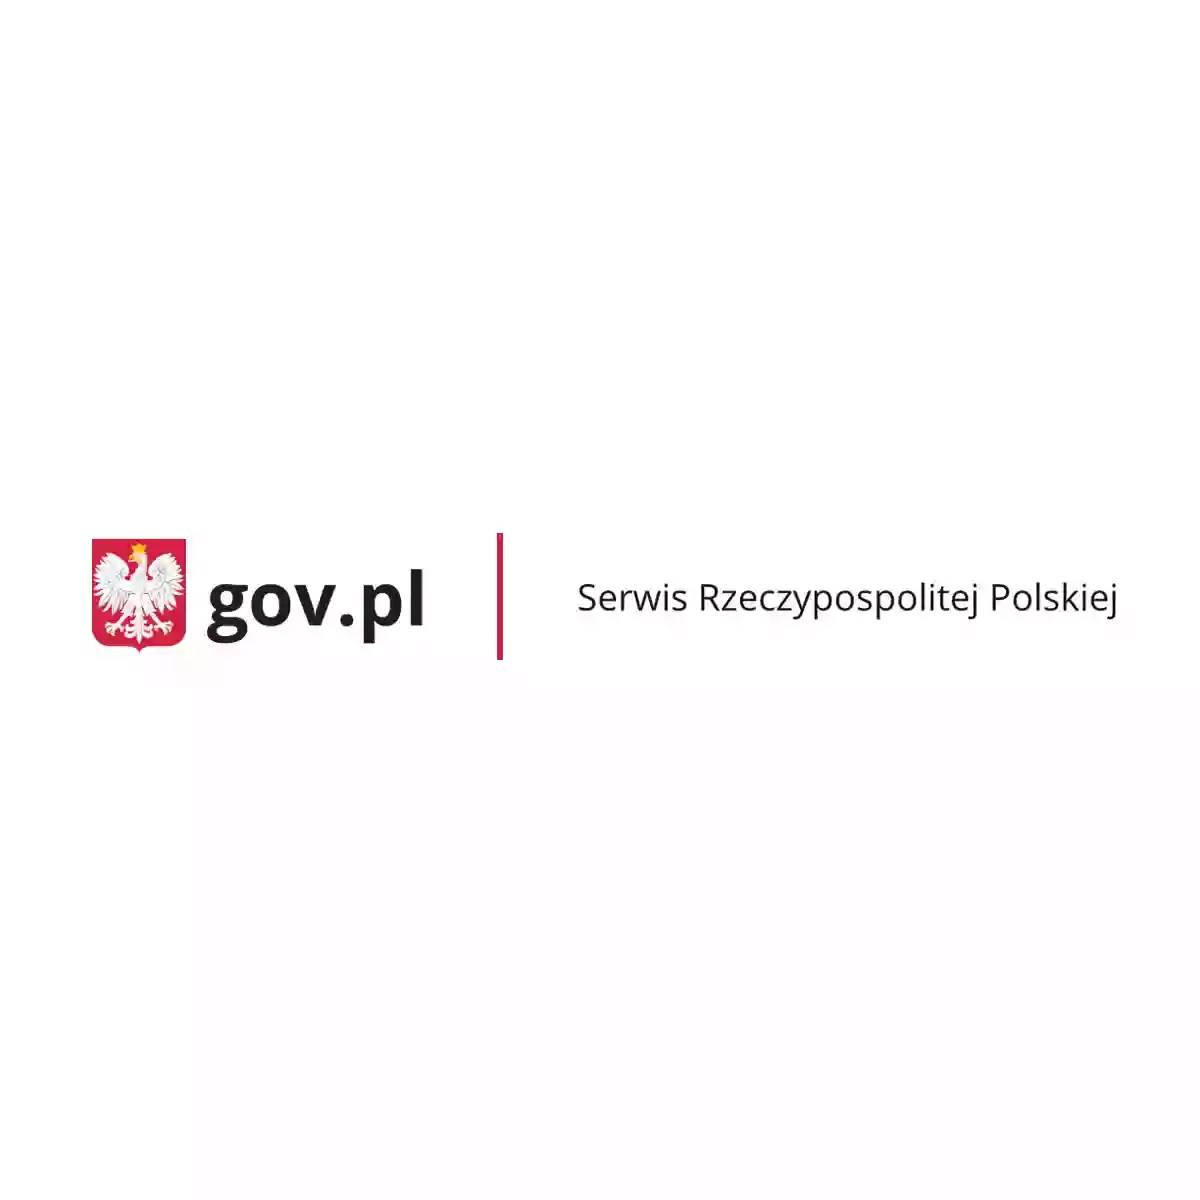 Генеральне консульство республіки Польща